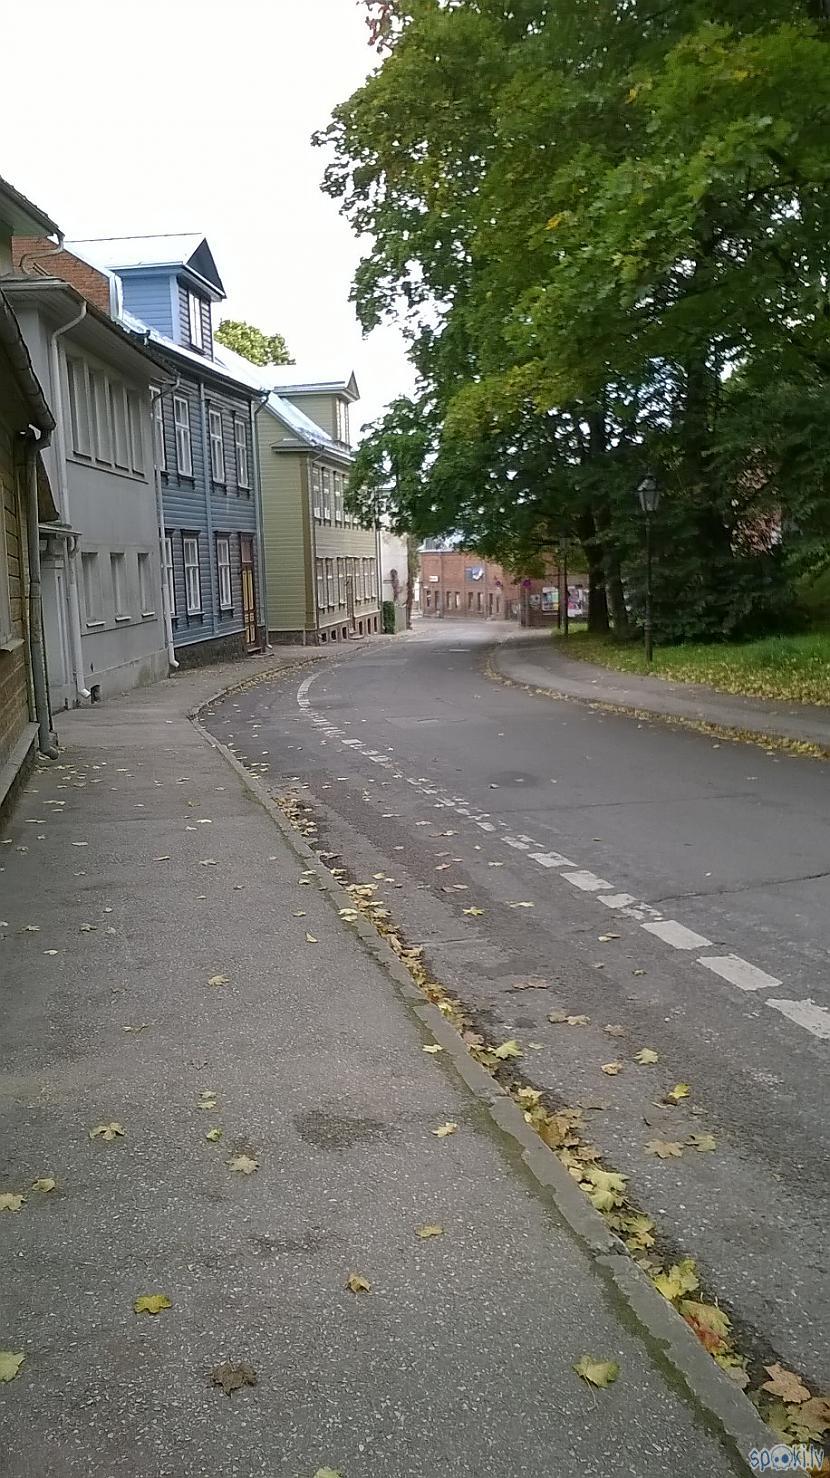 Tartu var atrast arī... Autors: Lestets Tartu - pilsēta Igaunijā, kur neviens neiesaka braukt, jo tur nav ko redzēt